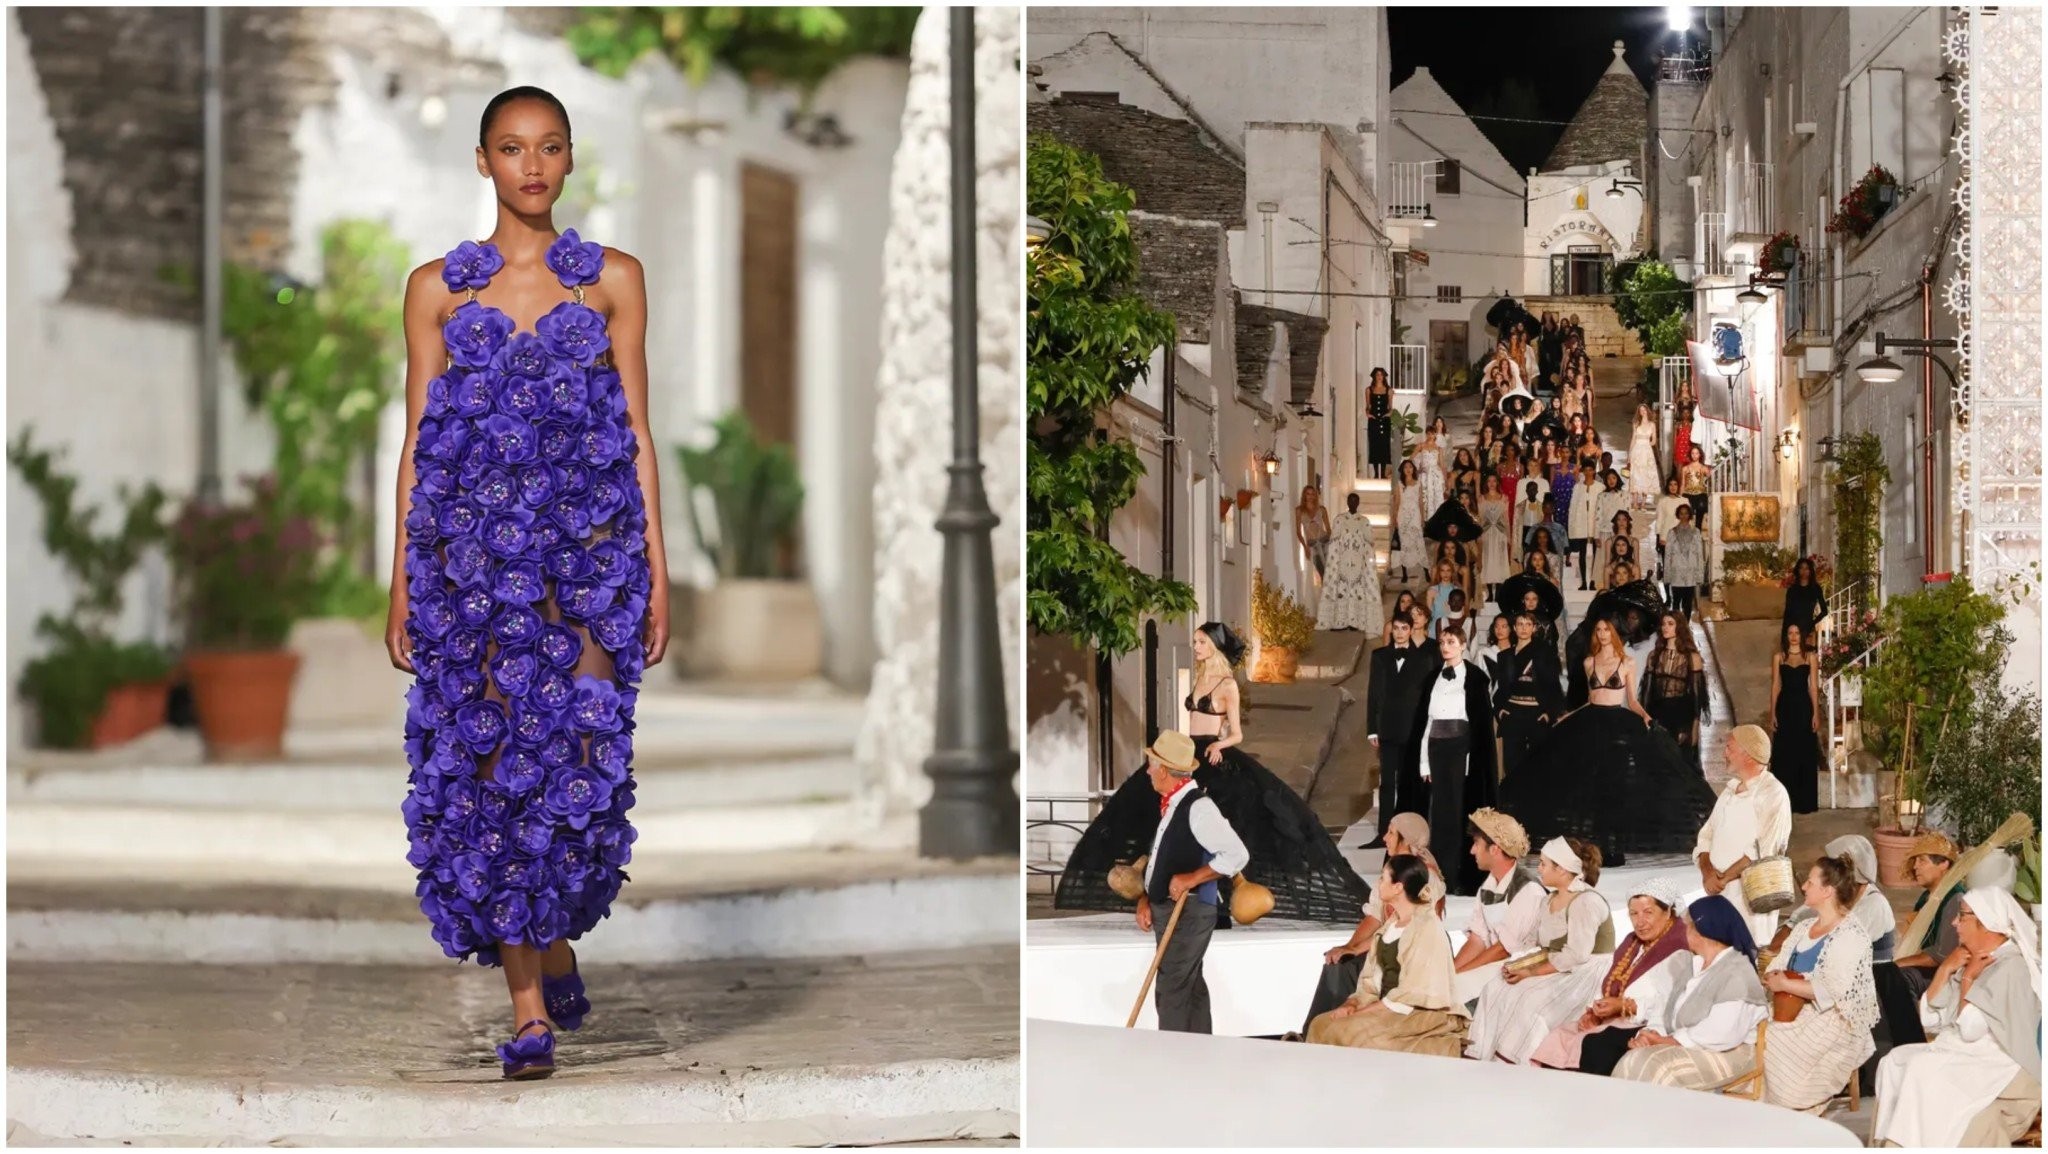 Η επίδειξη της Dolce & Gabbana γιόρτασε τις ντόπιες τέχνες της Puglia